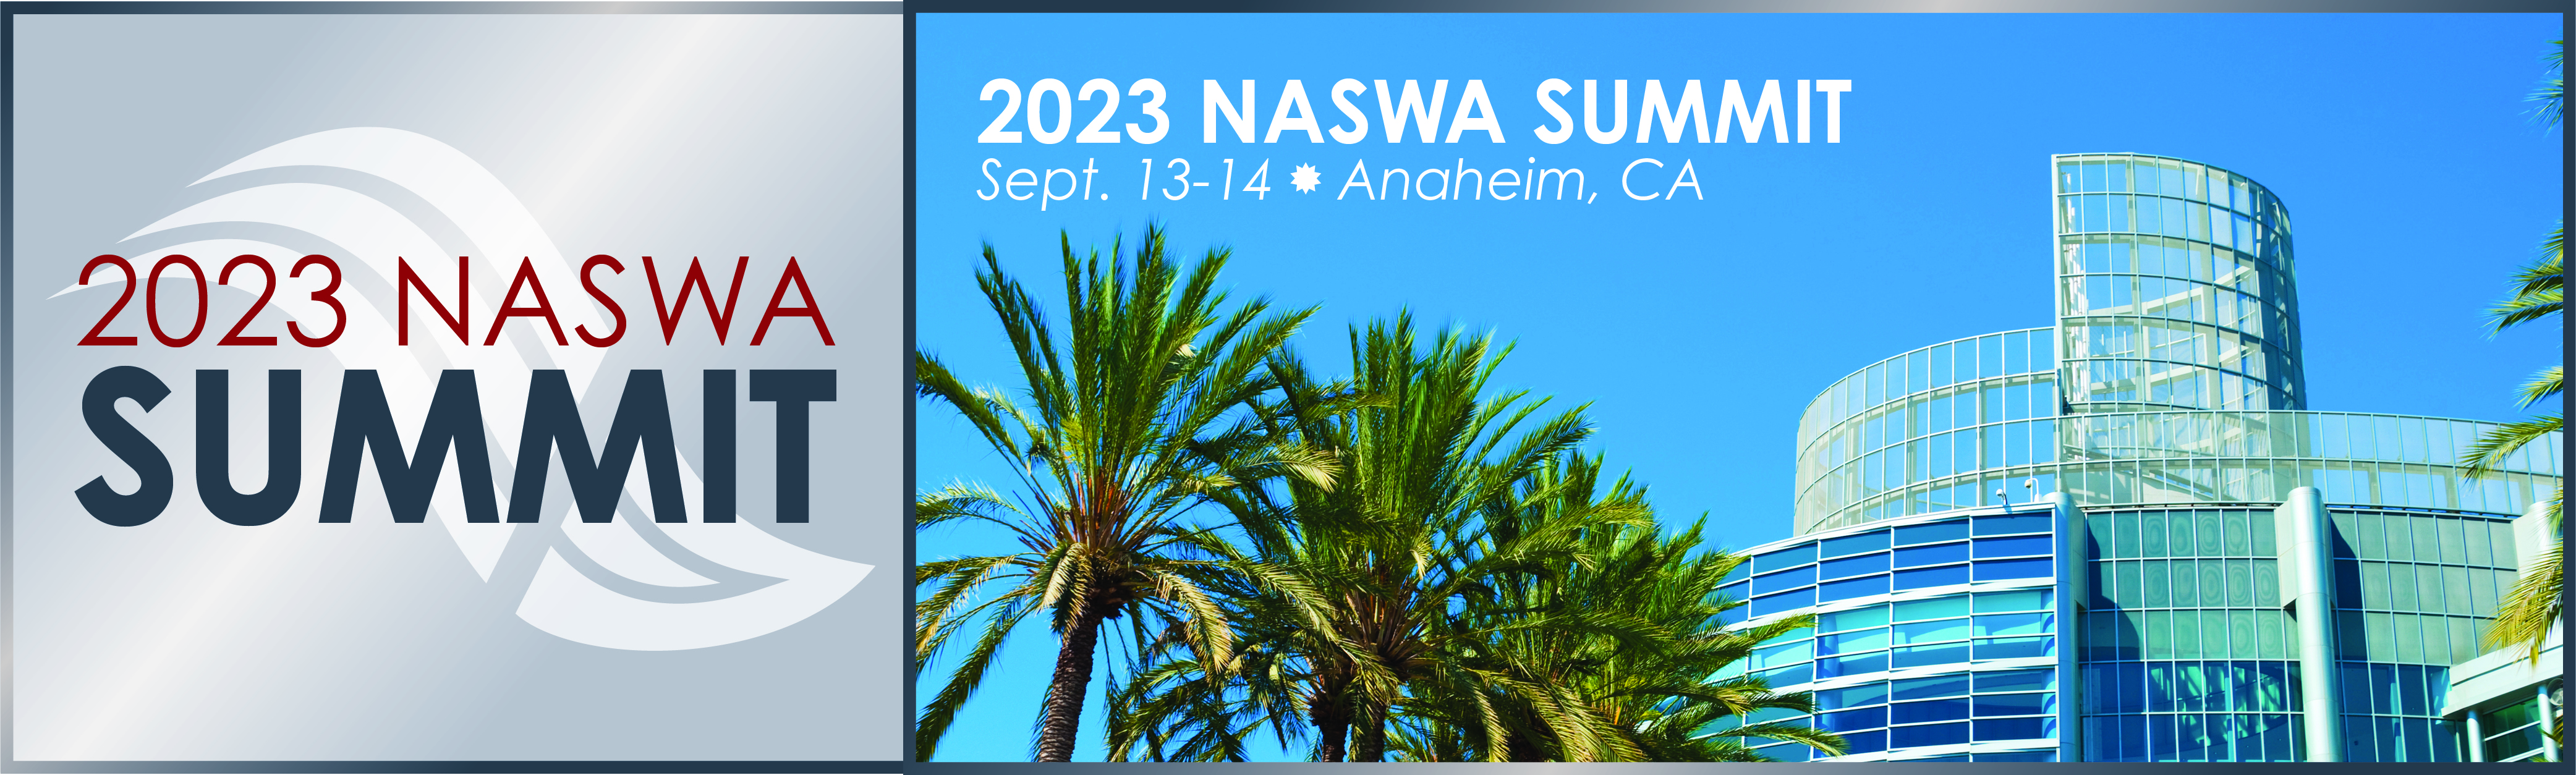 2023 NASWA SUMMIT - September 13 - 14, 2023 - Anaheim, CA